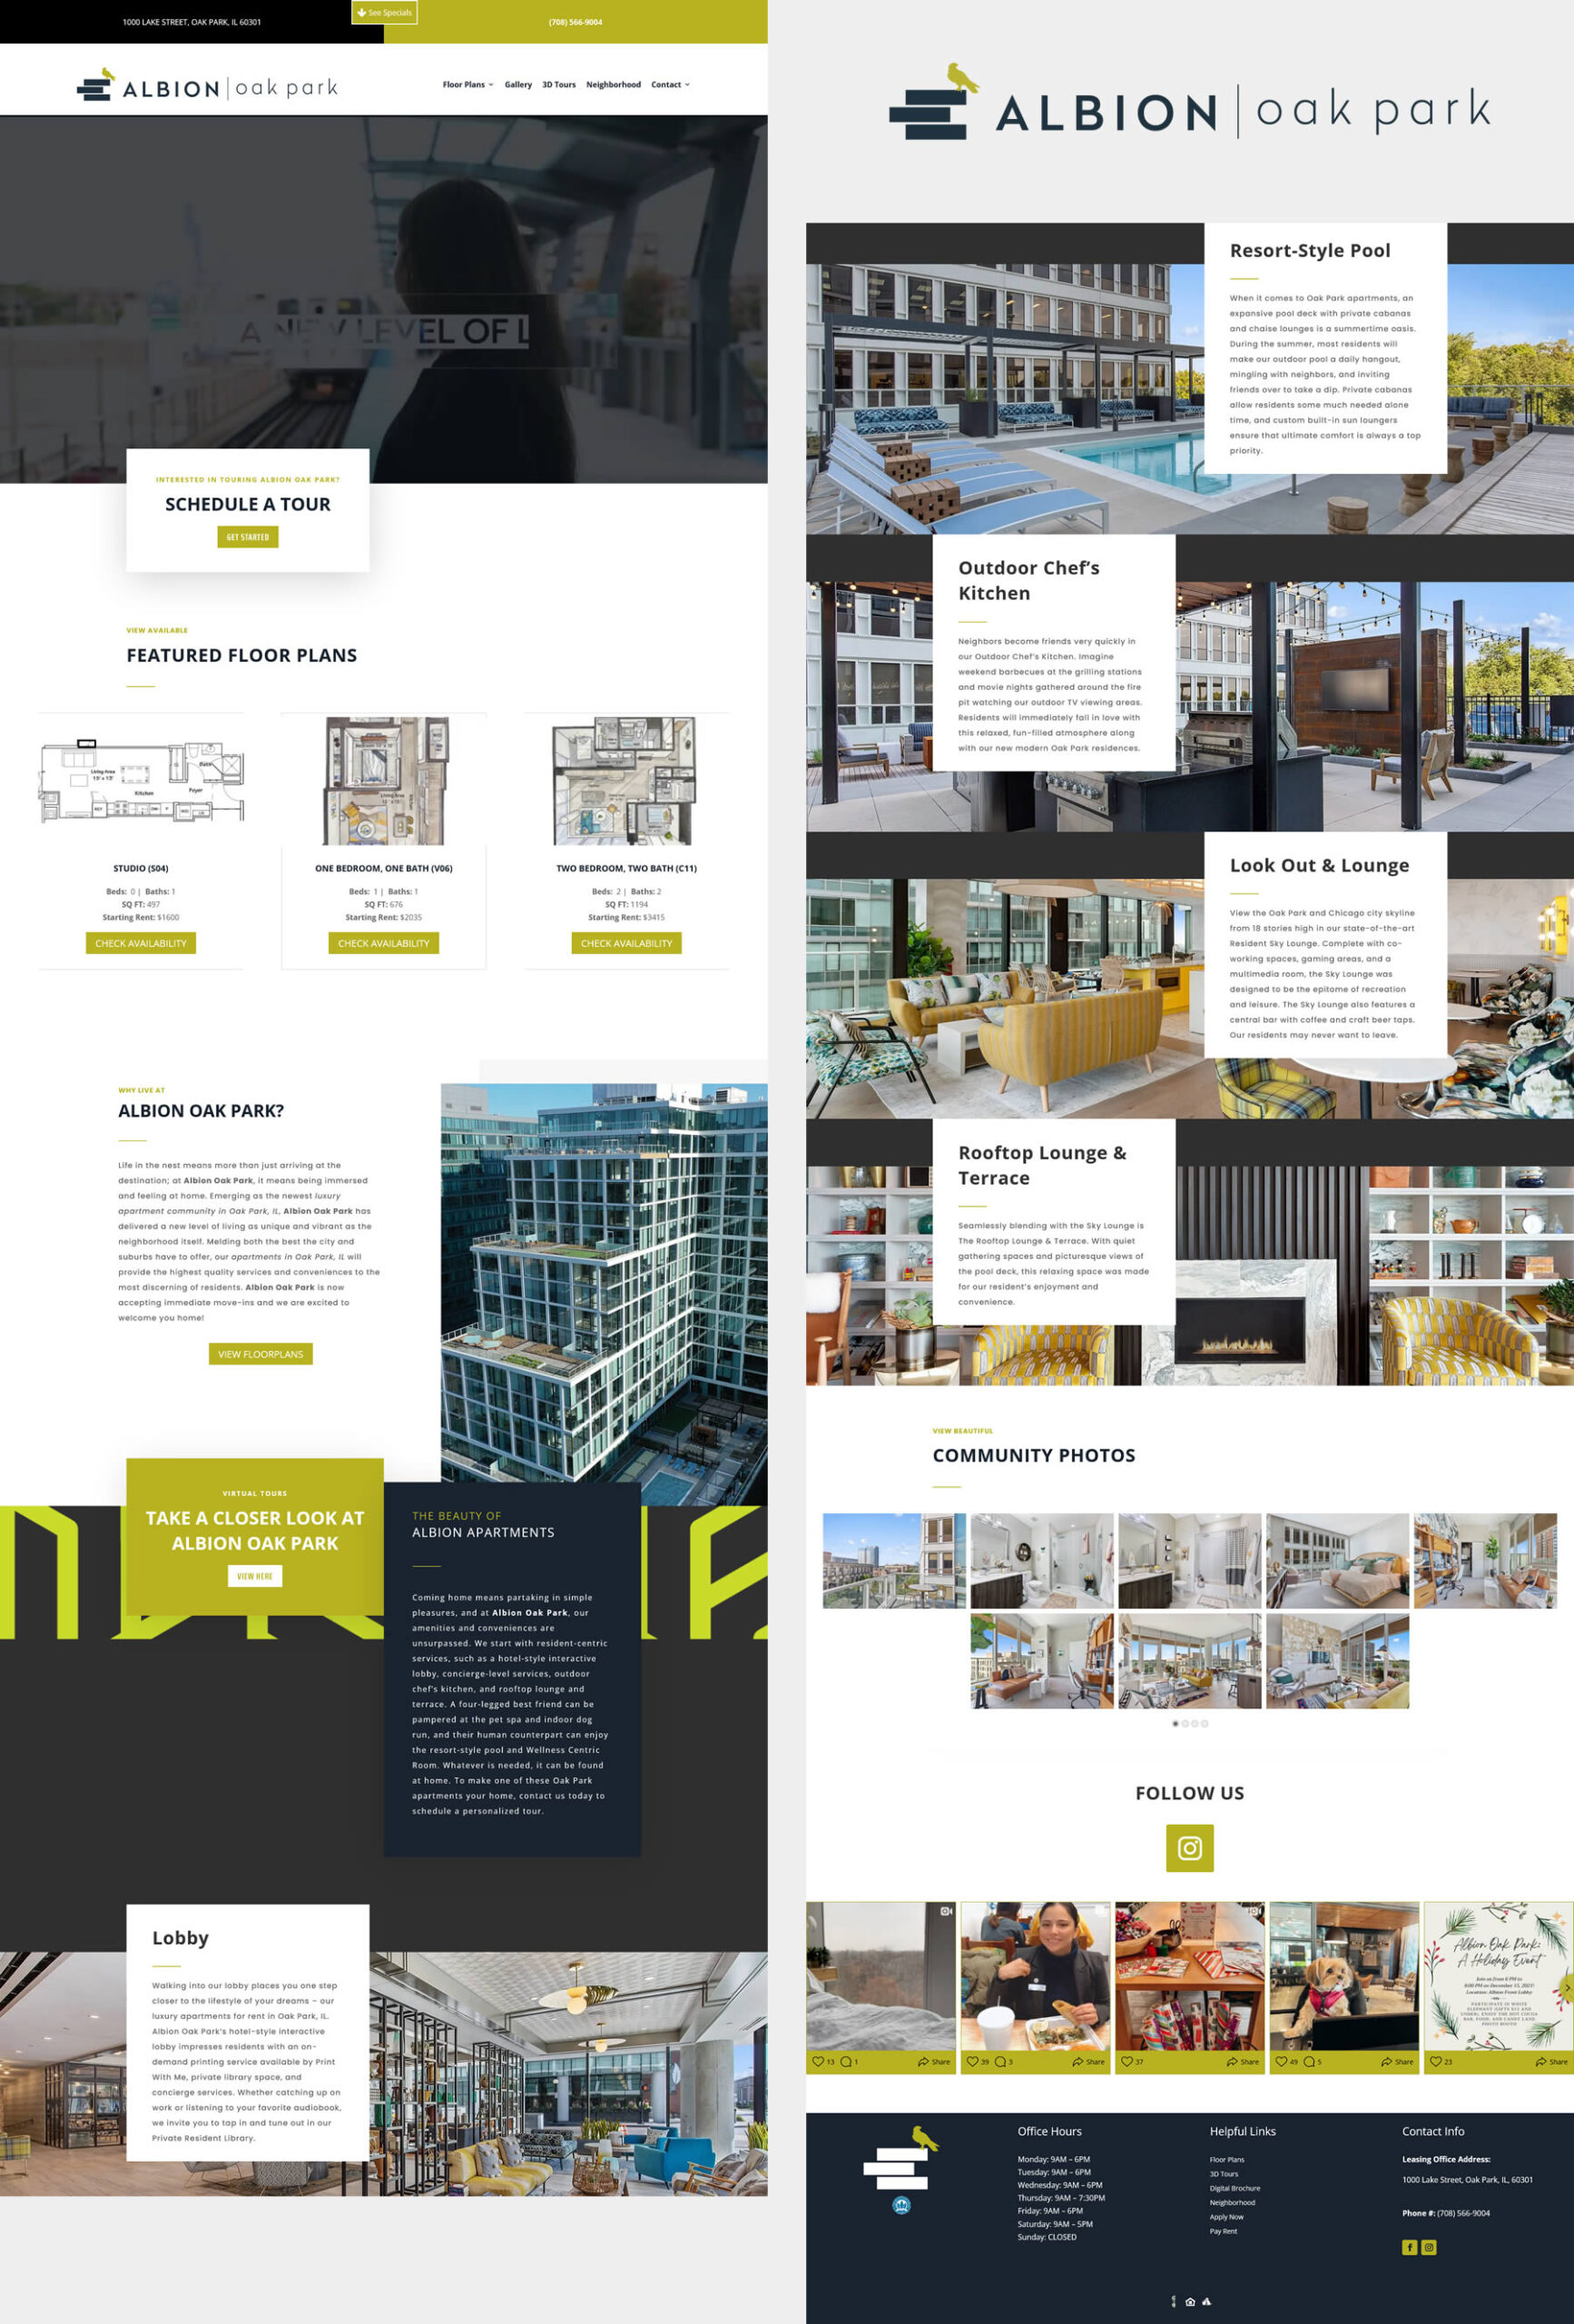 greenworks-studio-real-estate-marketing-agency-albion-oak-park-website-digital